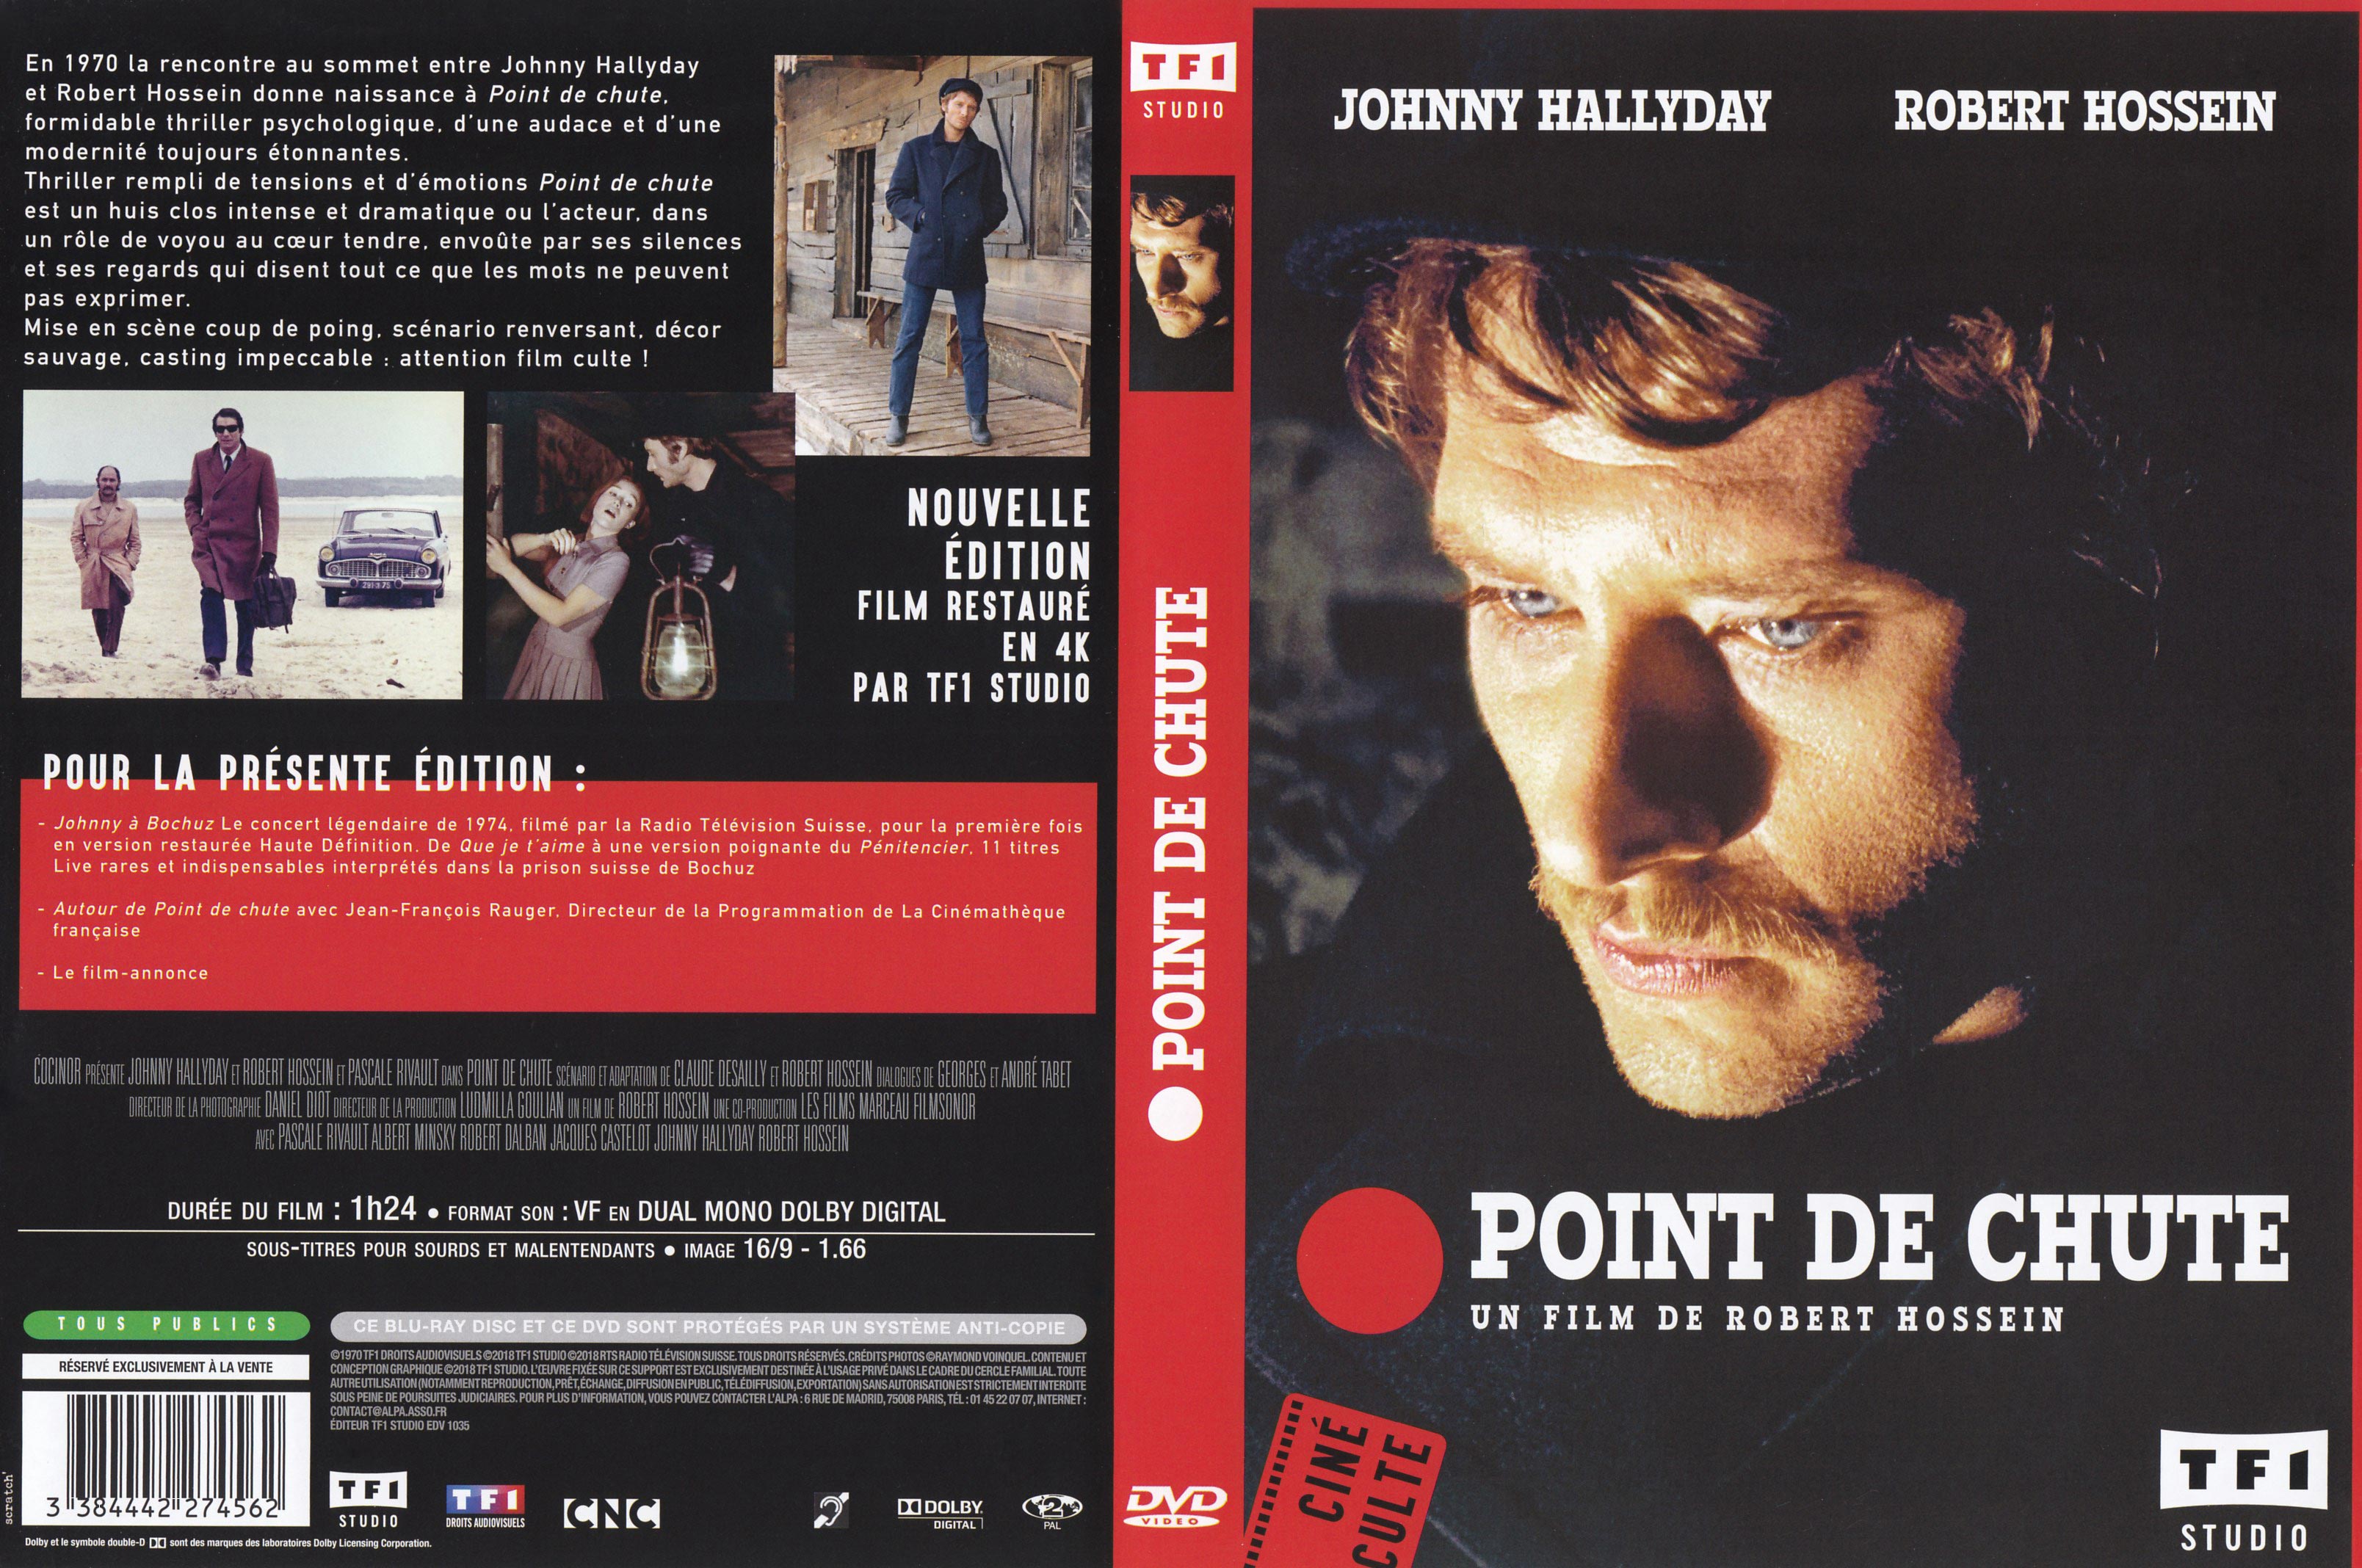 Jaquette DVD Point de chute v2